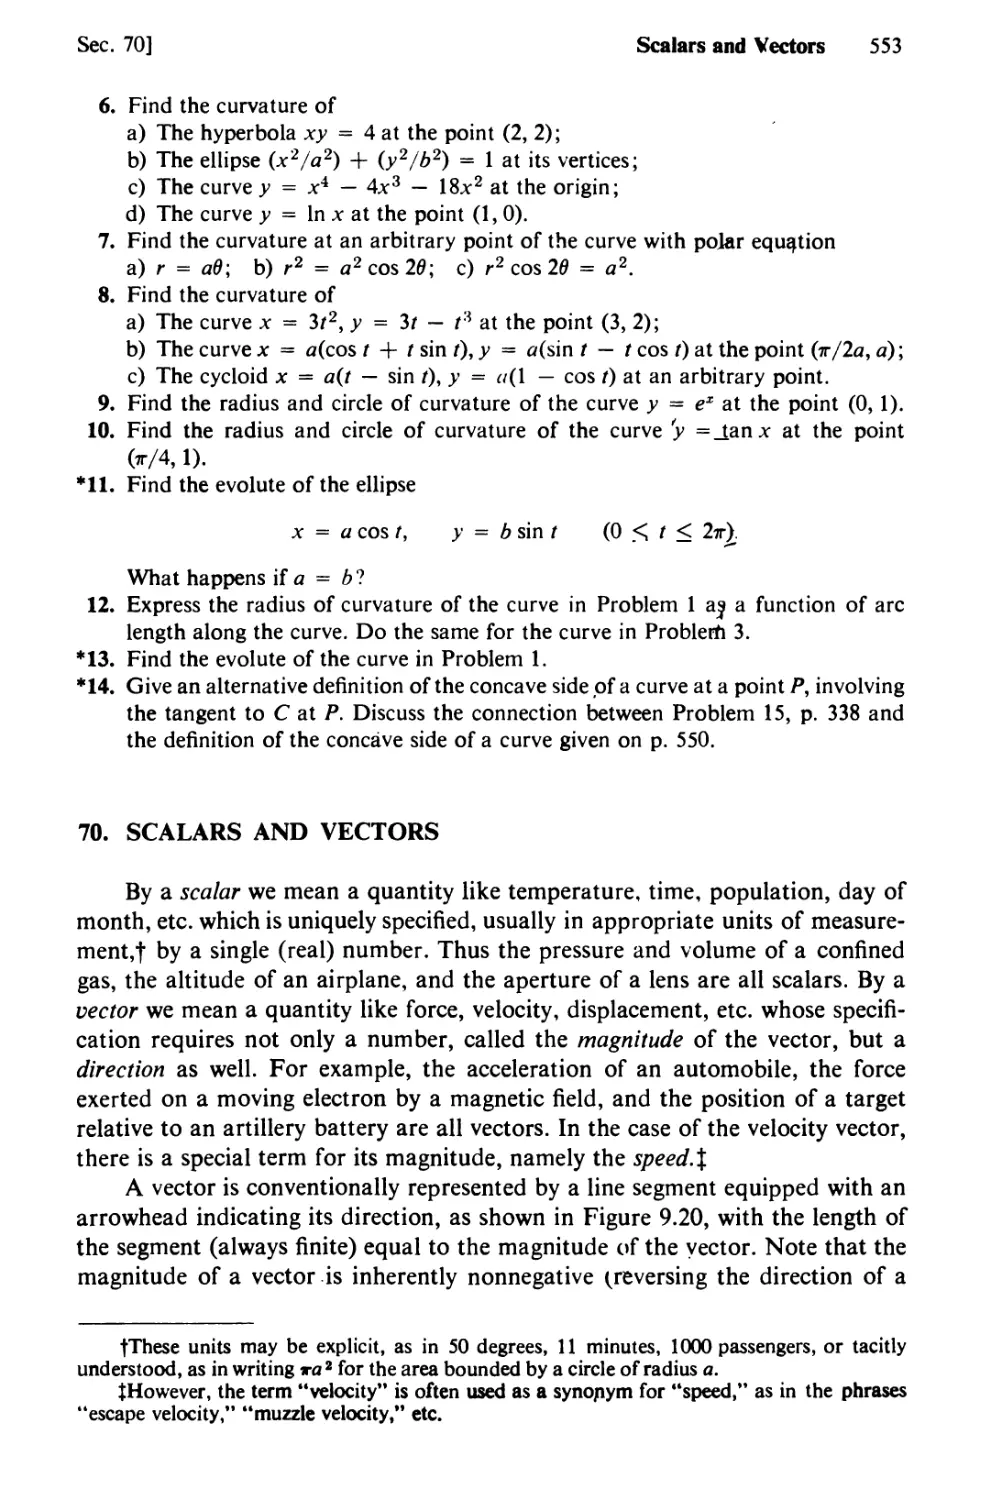 70. Scalars and Vectors